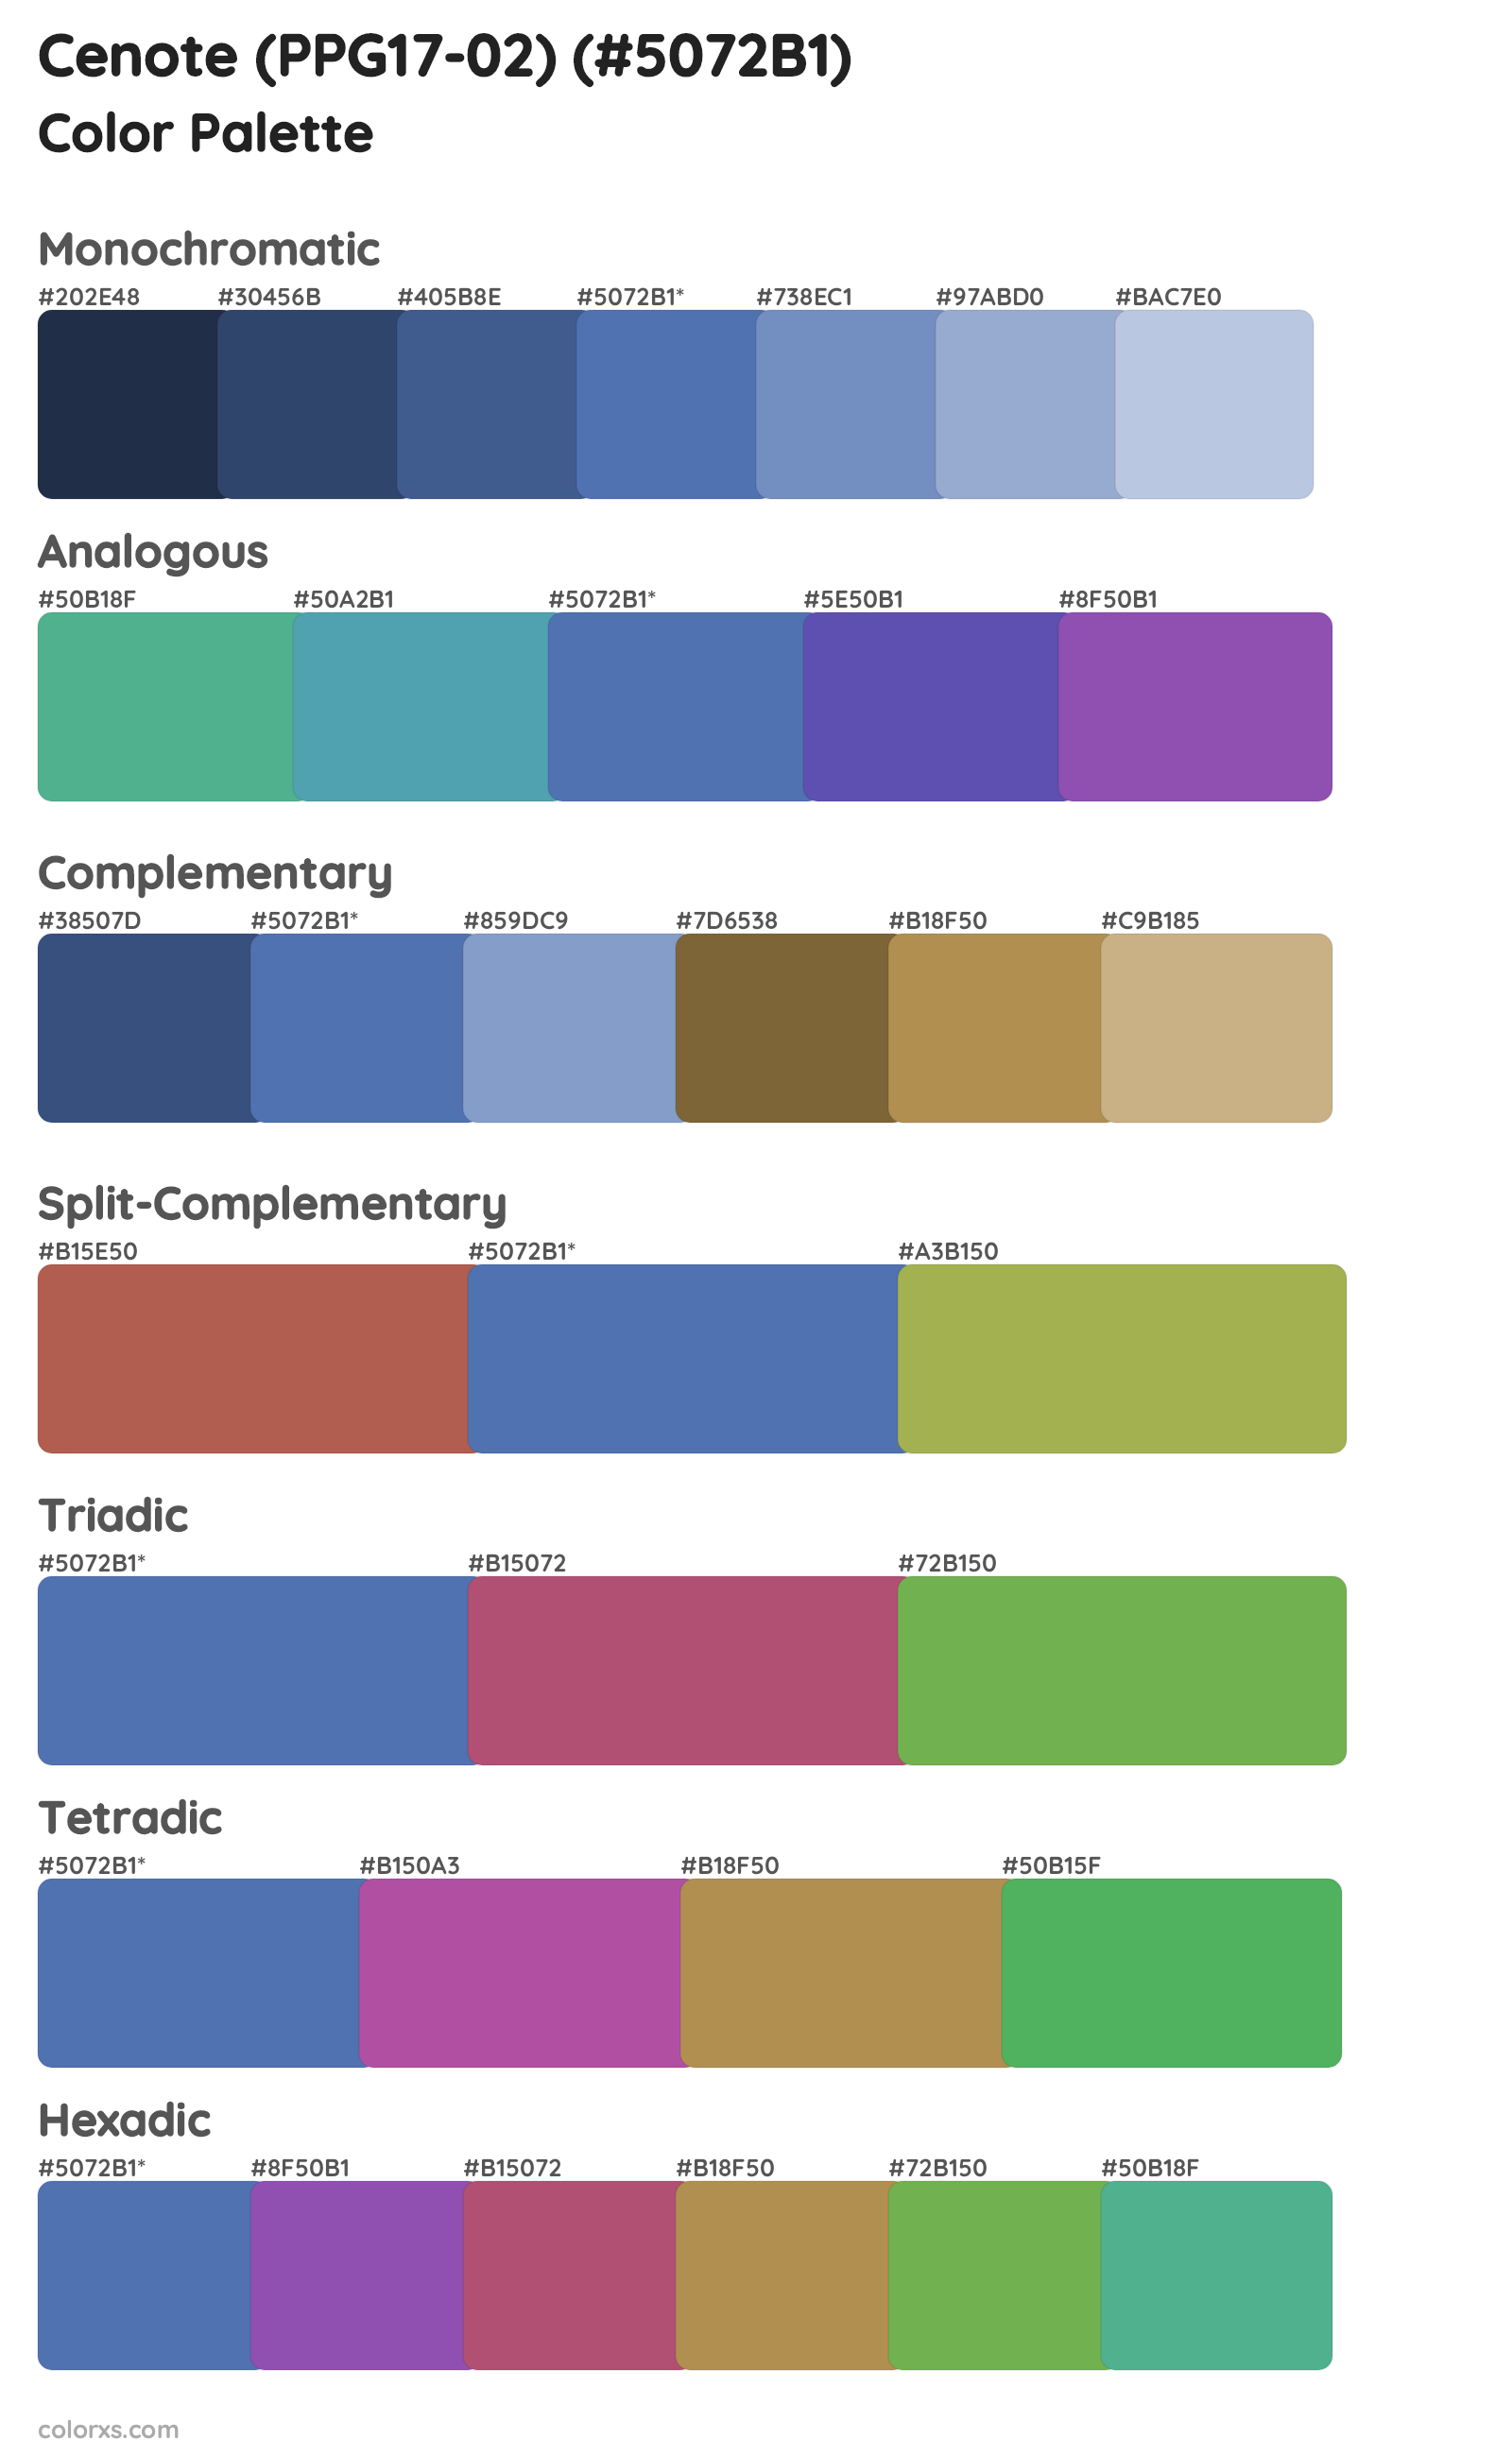 Cenote (PPG17-02) Color Scheme Palettes